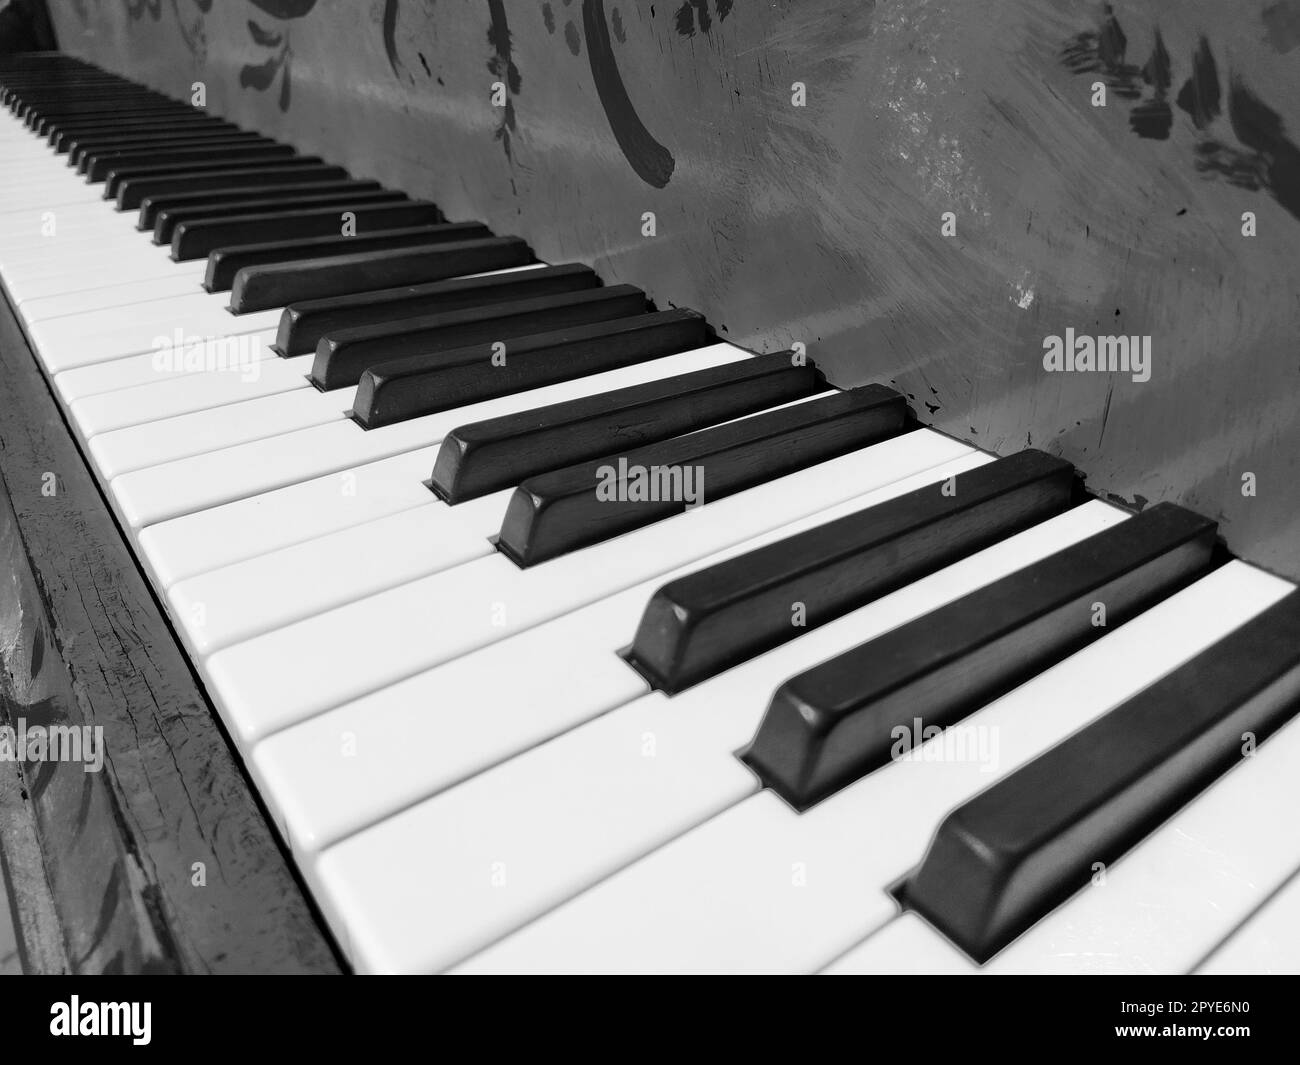 Un pianoforte o pianoforte è uno strumento musicale a percussione e tastiera. Un'ottava è un intervallo musicale in cui il rapporto delle frequenze tra i suoni è uno a due. Bianco e nero. Foto Stock